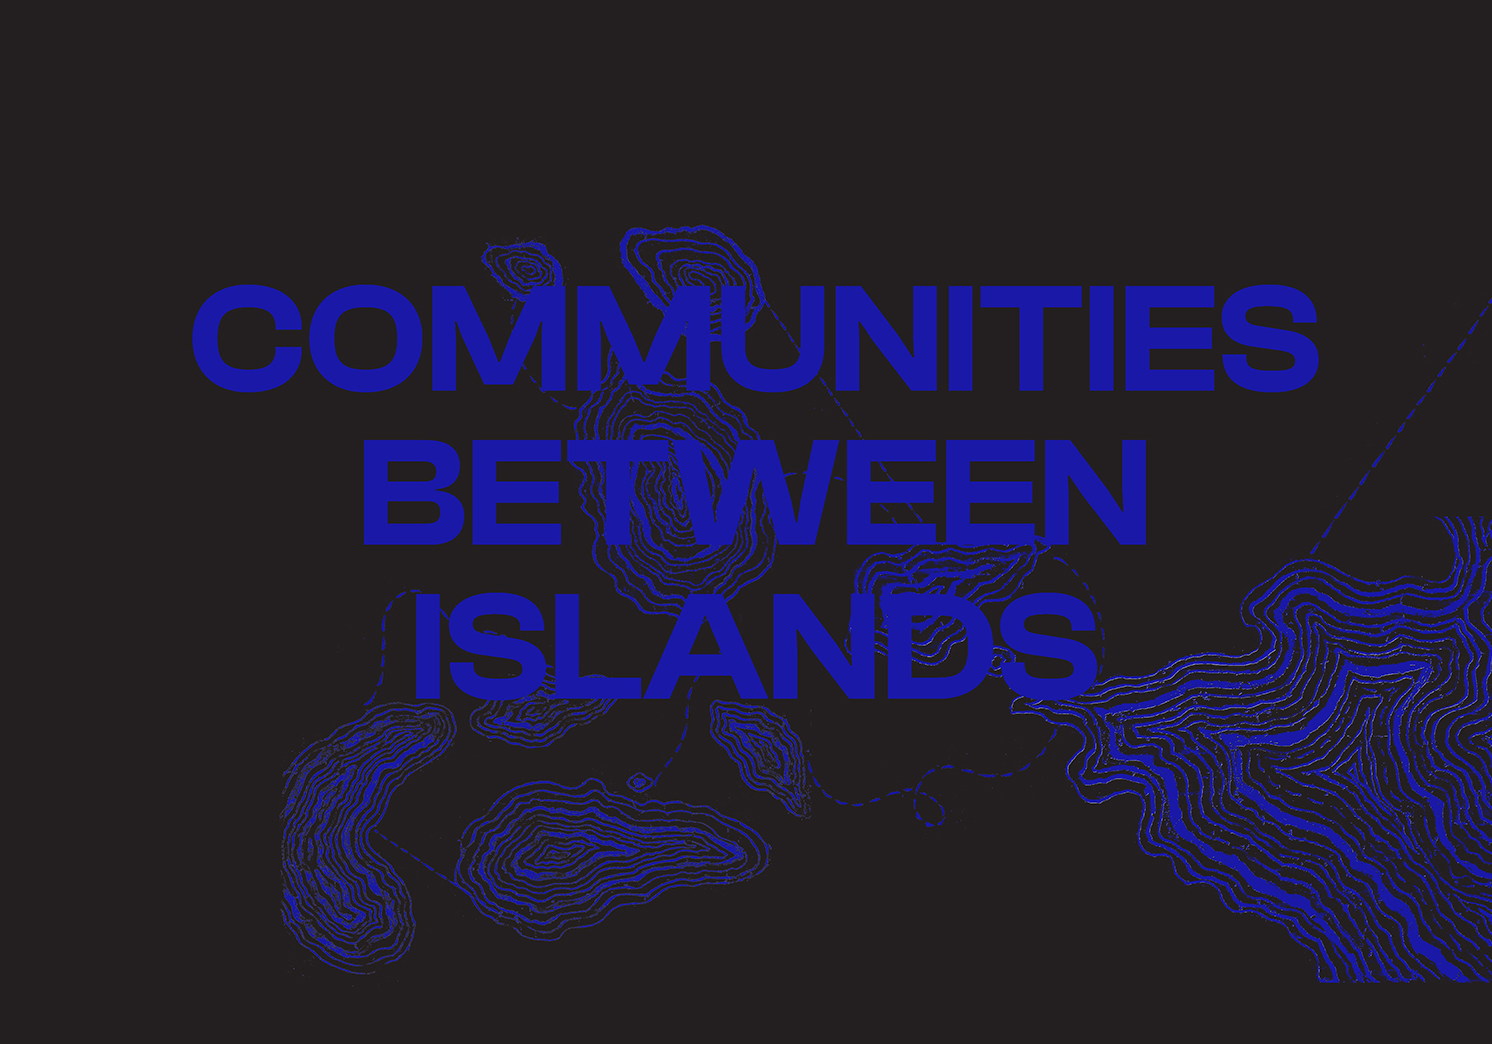 Communities Between Islands